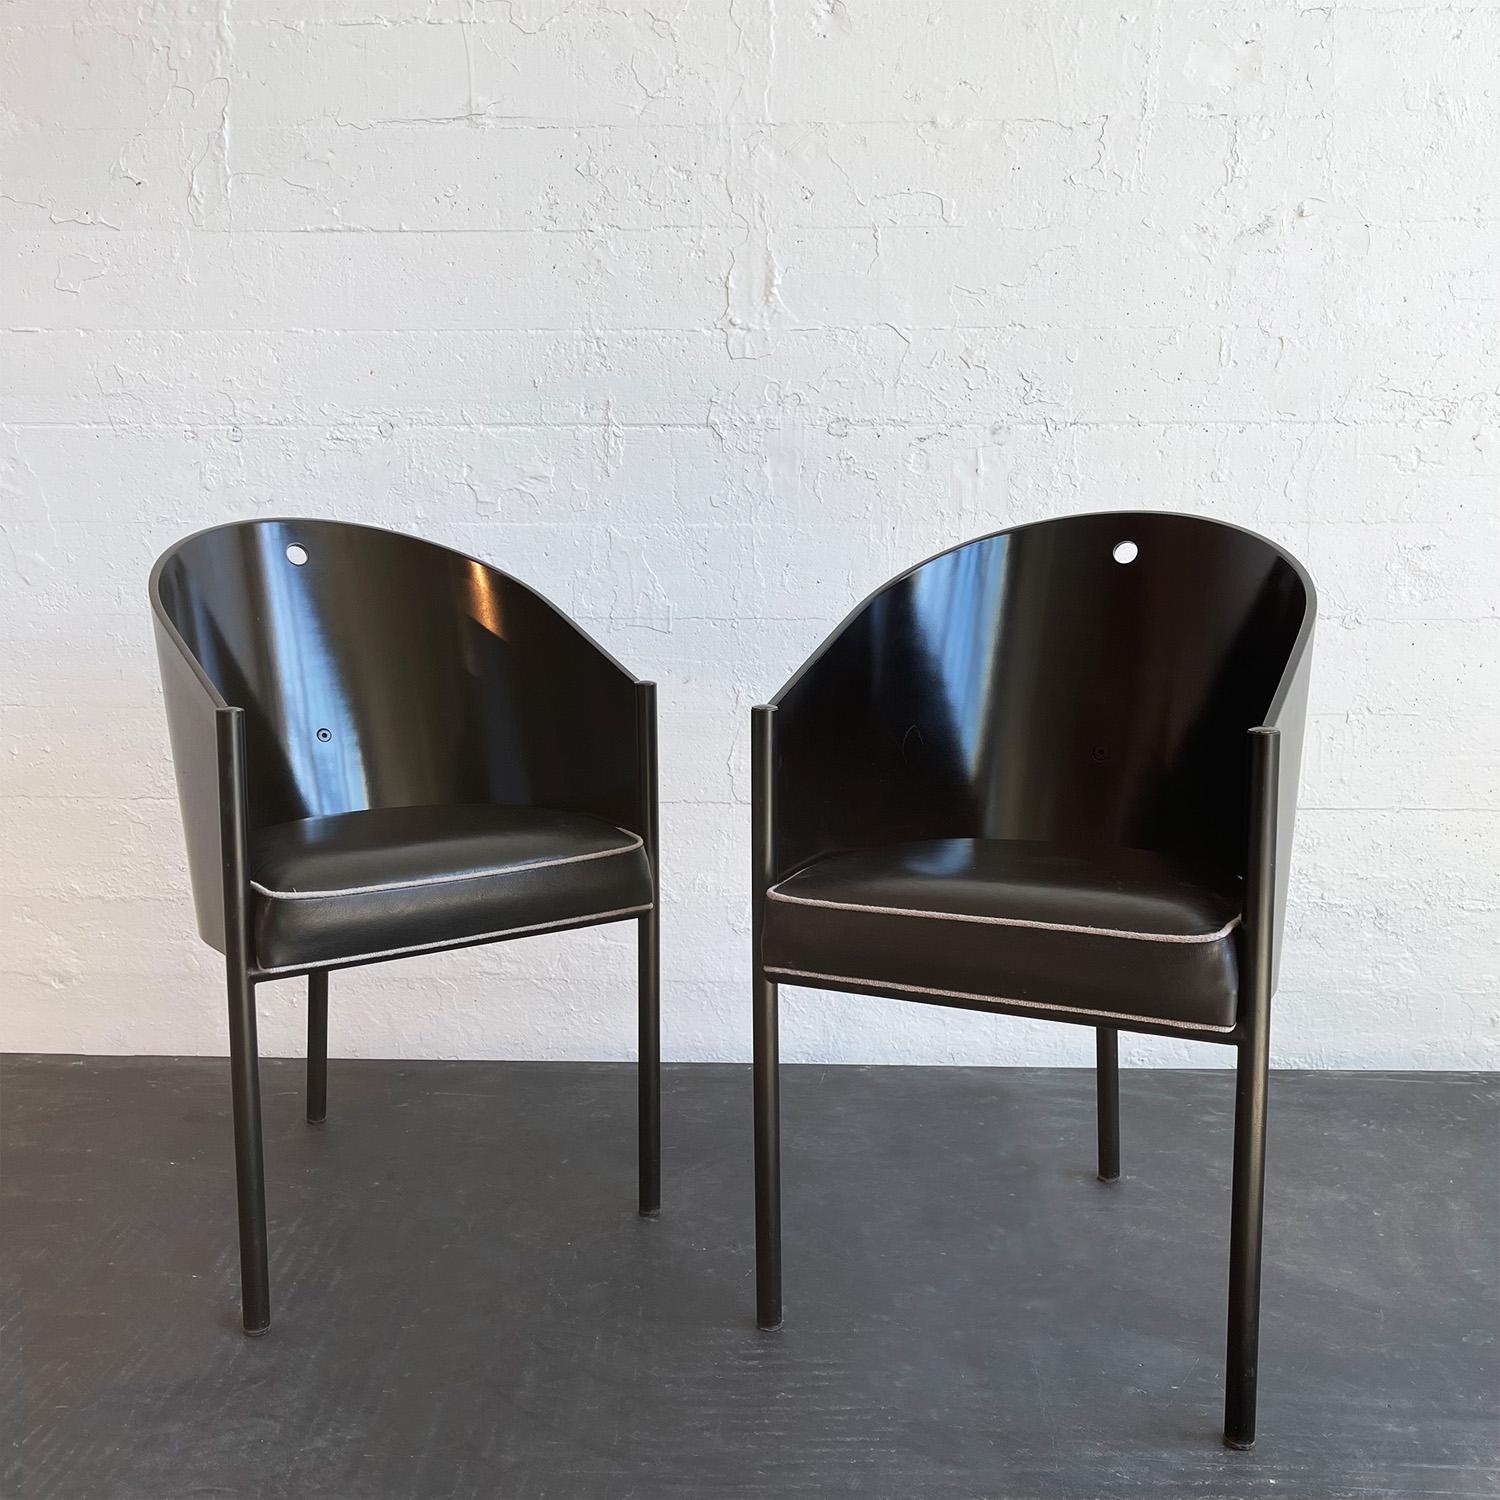 Dieses Paar eleganter Costes-Stühle des französischen Designers und Architekten Philippe Starck für Driade, Italien, wurde für das Costes-Café in Paris entworfen. Die Sitzschale des Stuhls besteht aus schwarz lackiertem Sperrholz, das auf drei